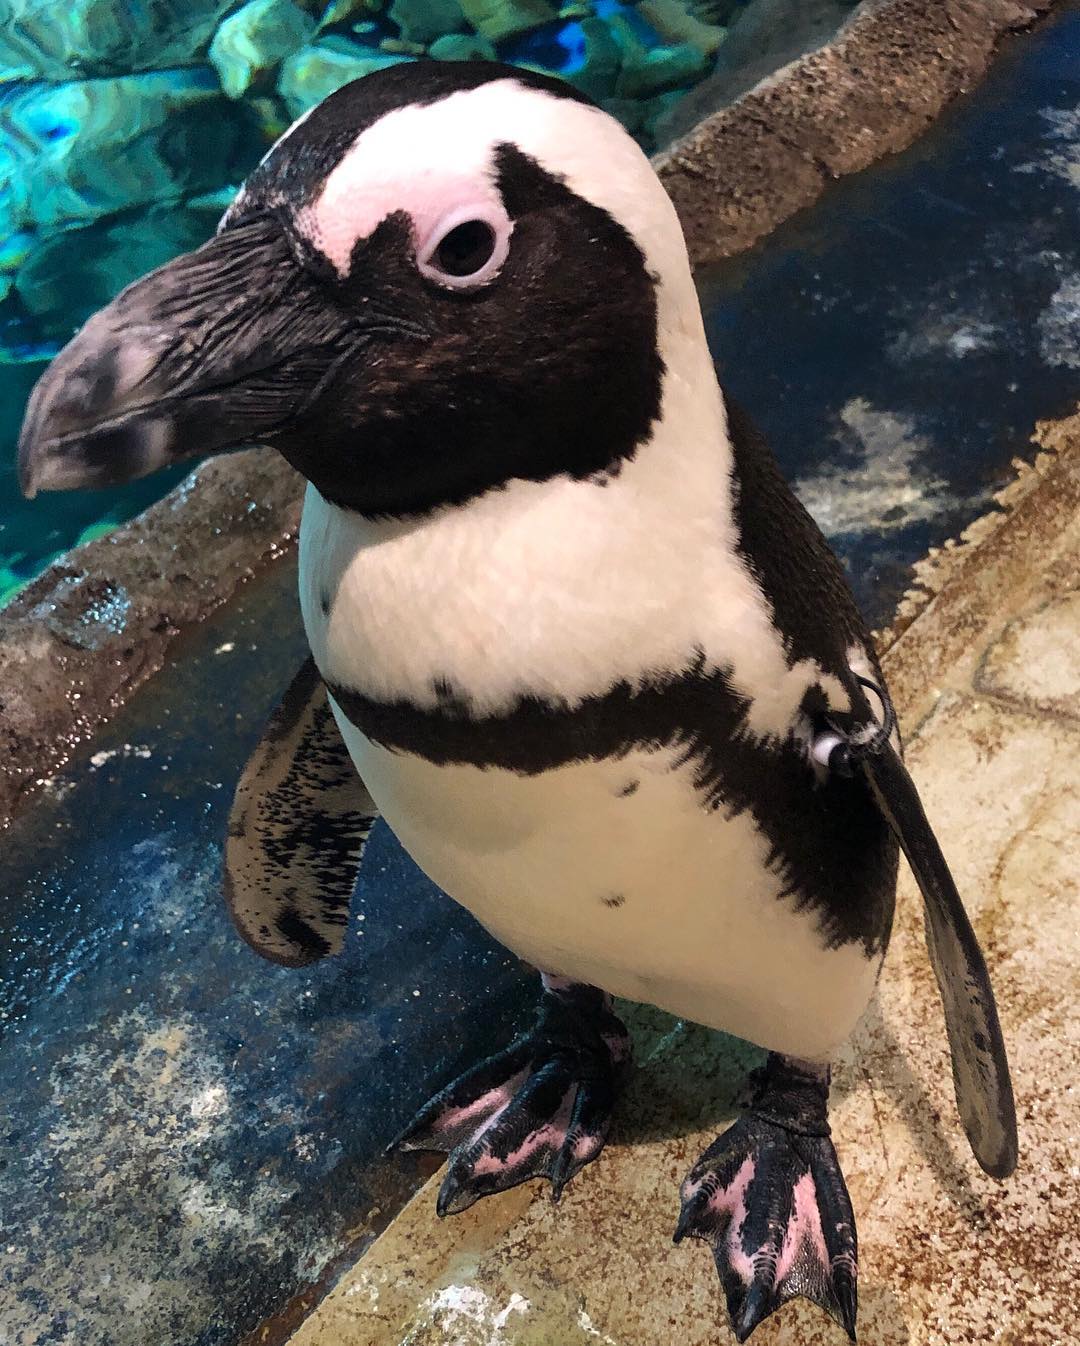 Cute penguin standing at Odysea Aquarium. Photo by Instagram user @odysea.aquarium